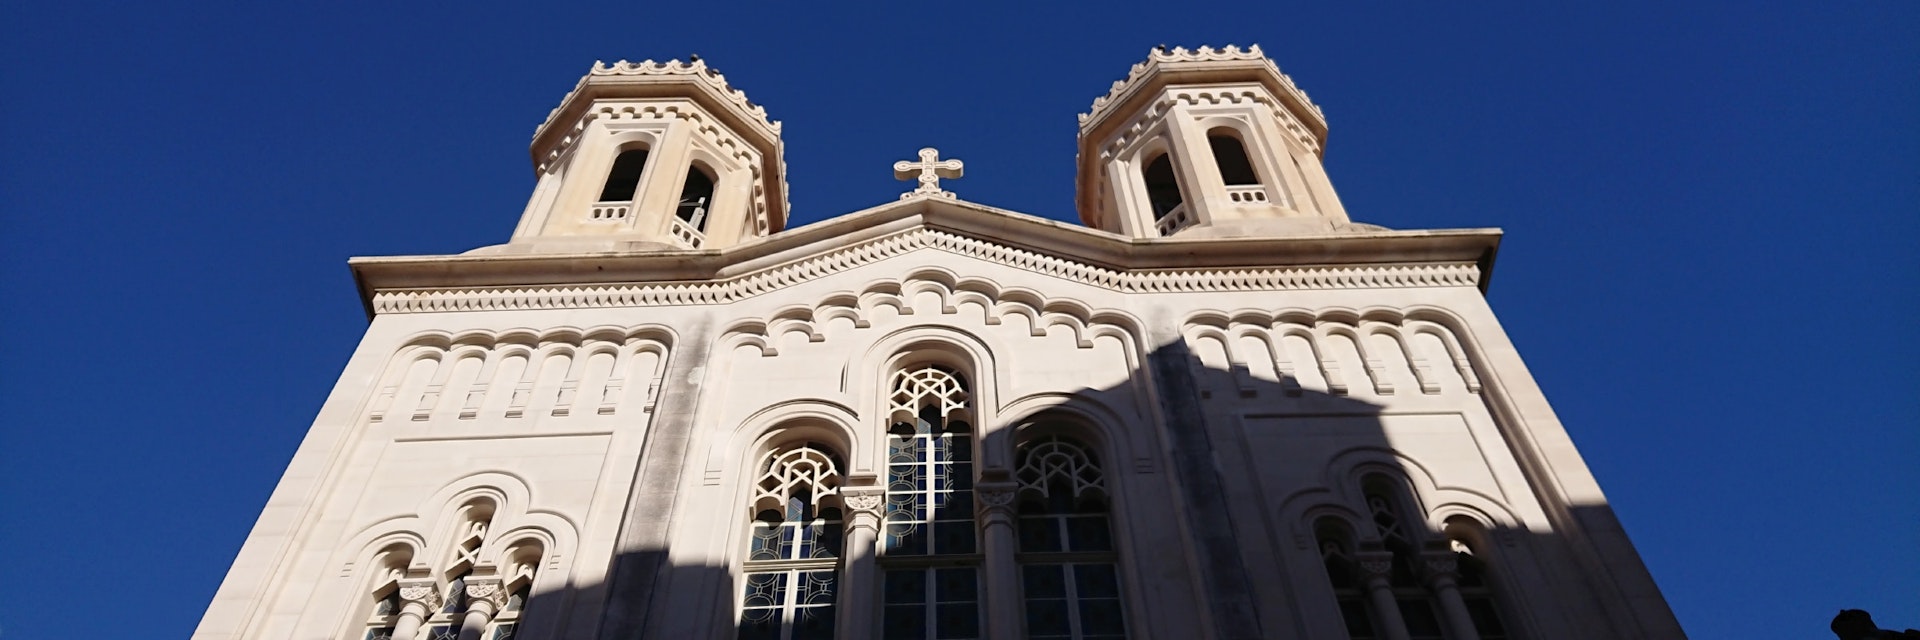 Church of Annunciation front facade